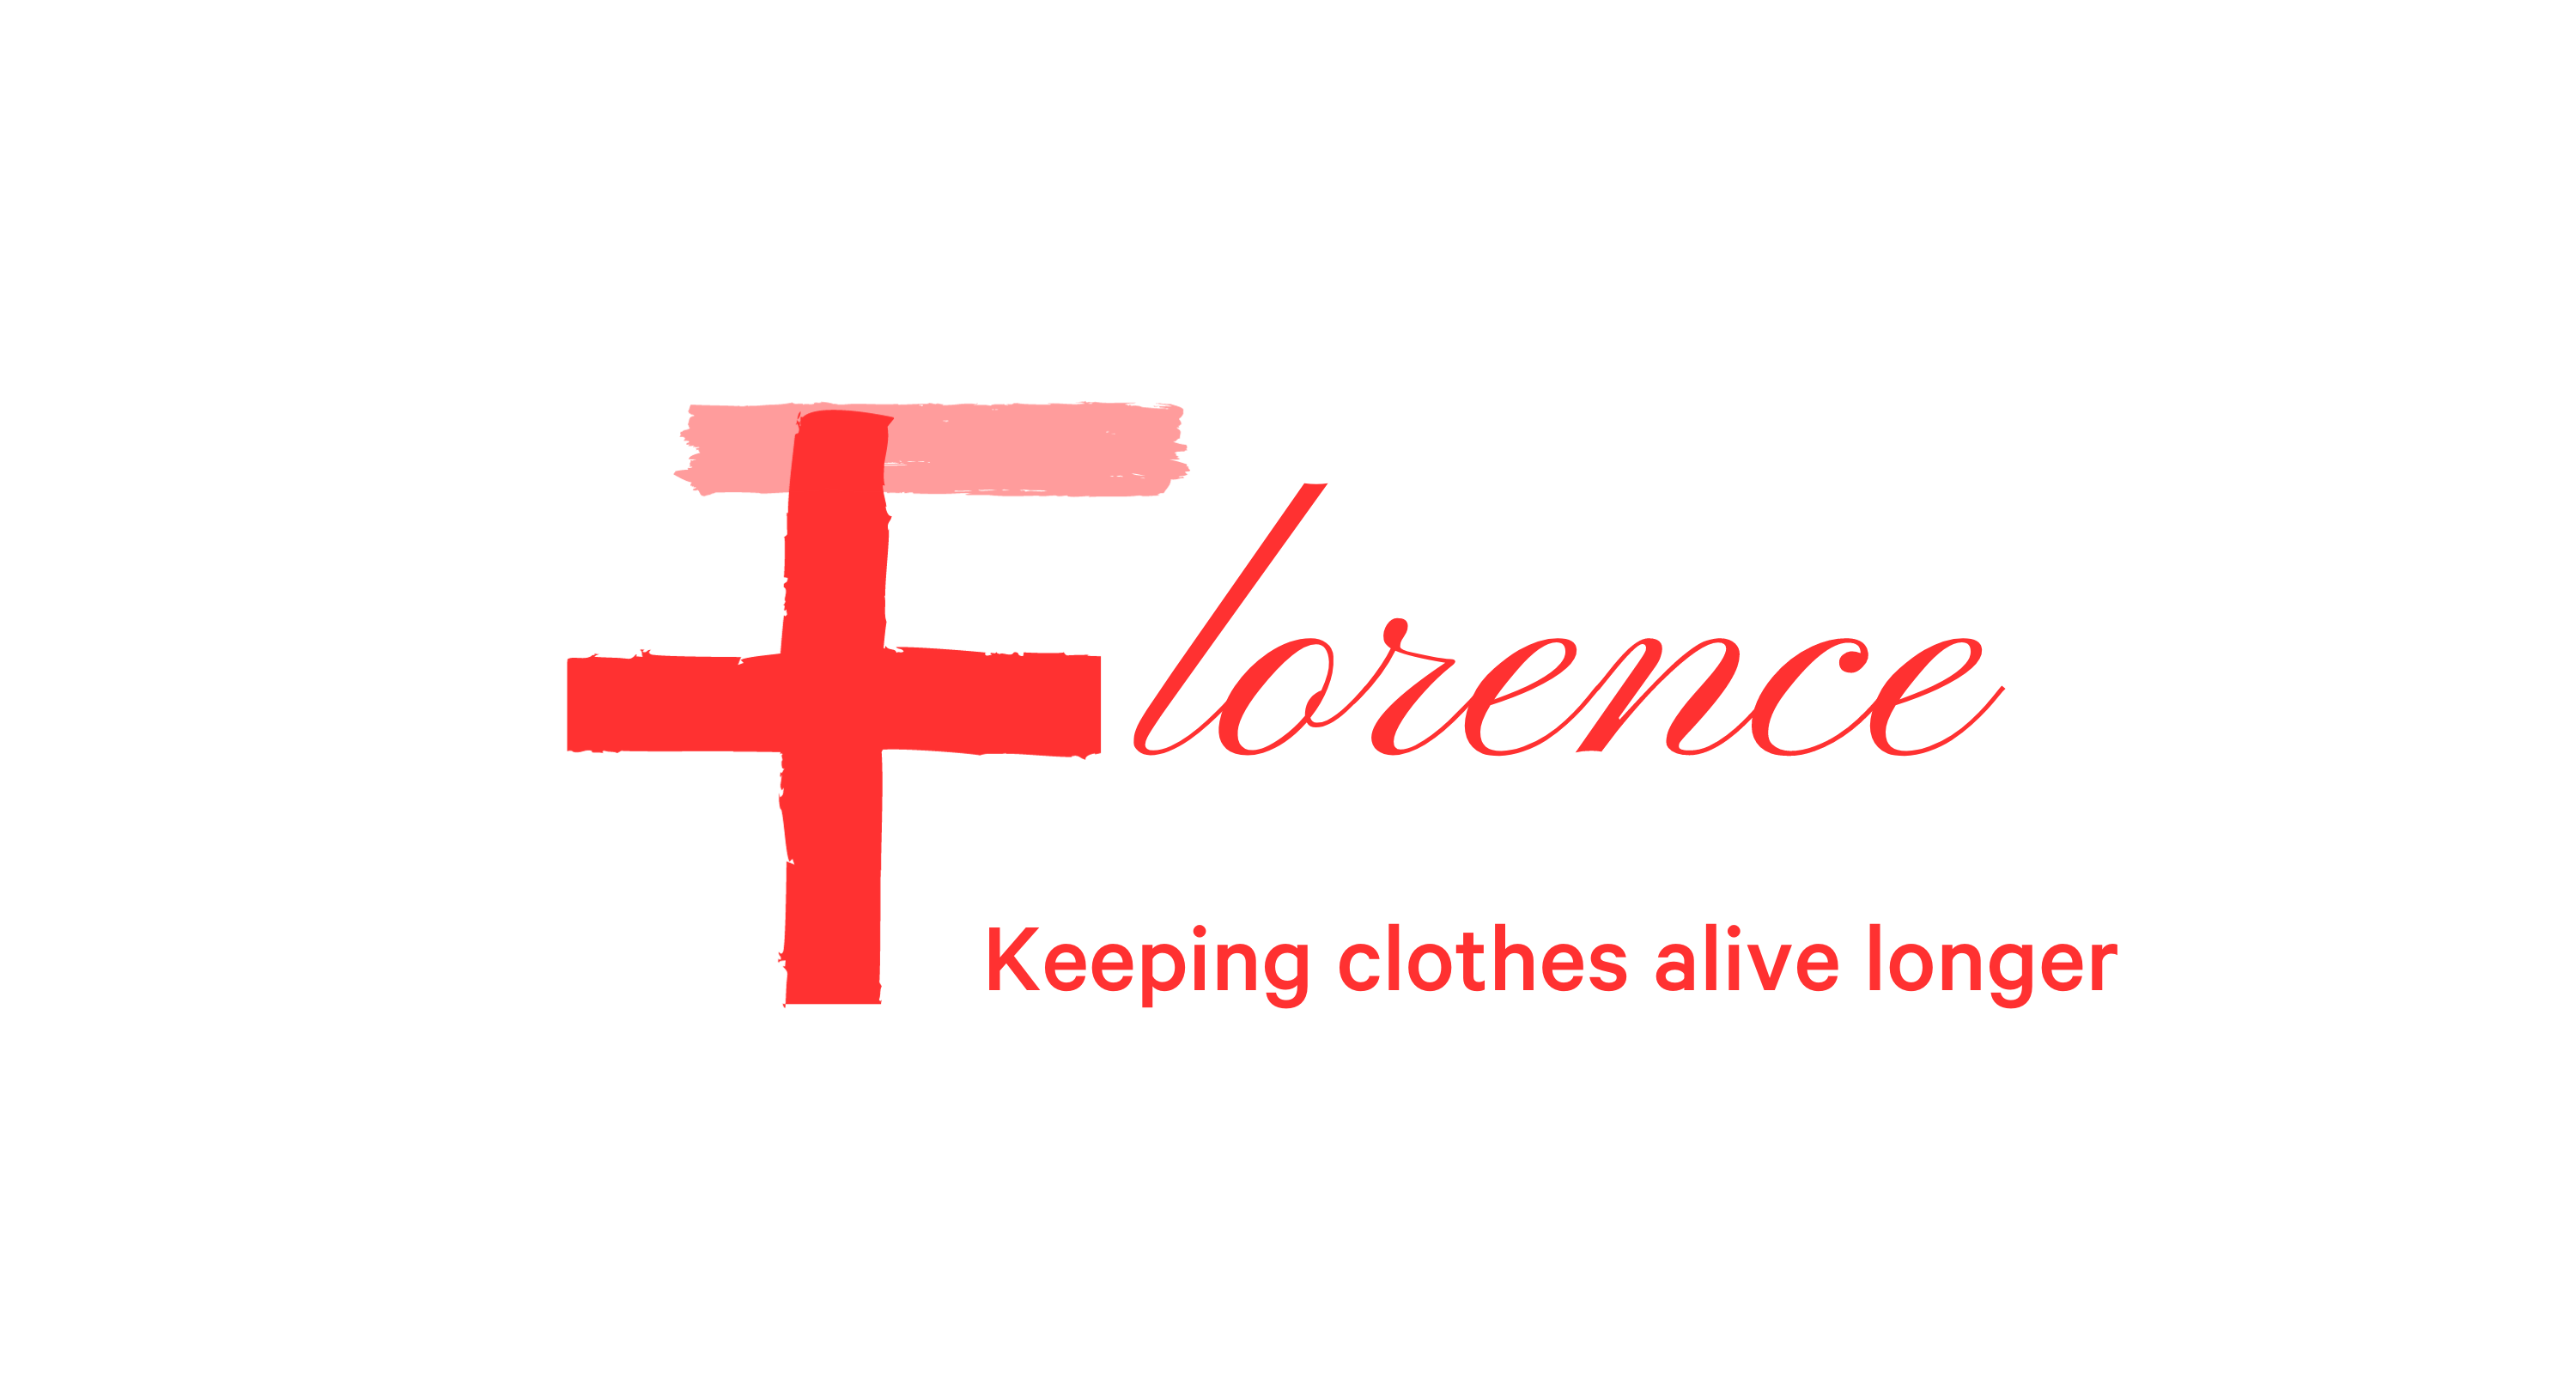 florencesavesclothes.com